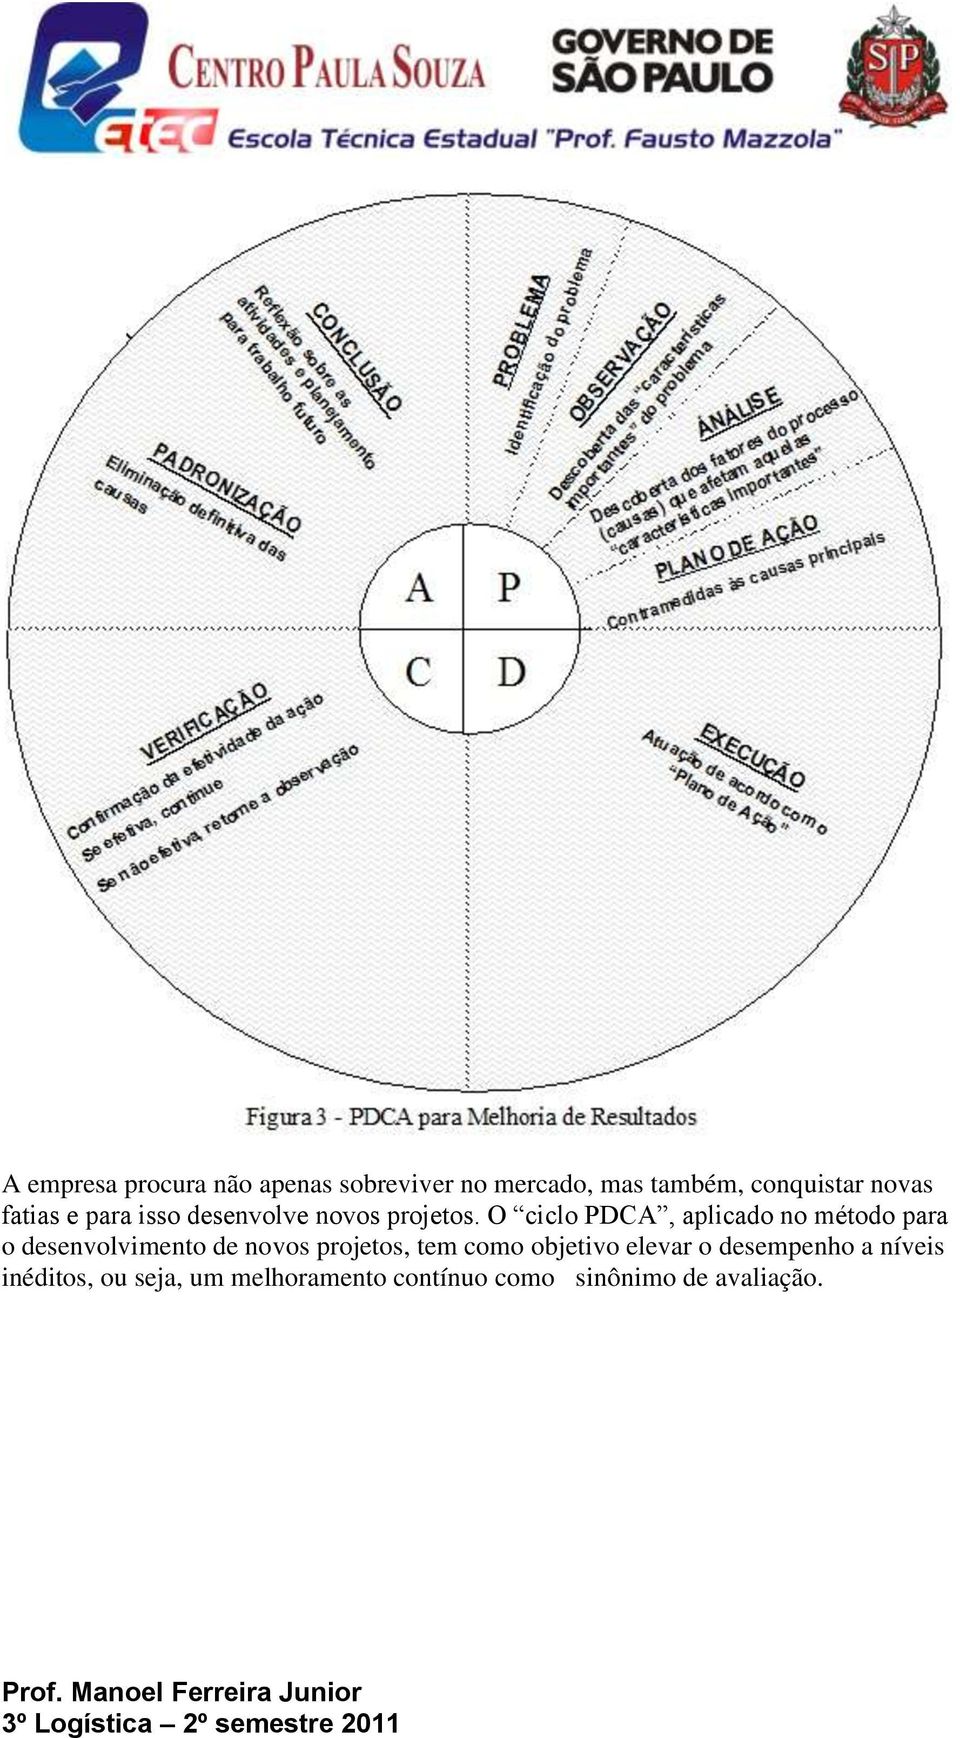 O ciclo PDCA, aplicado no método para o desenvolvimento de novos projetos, tem